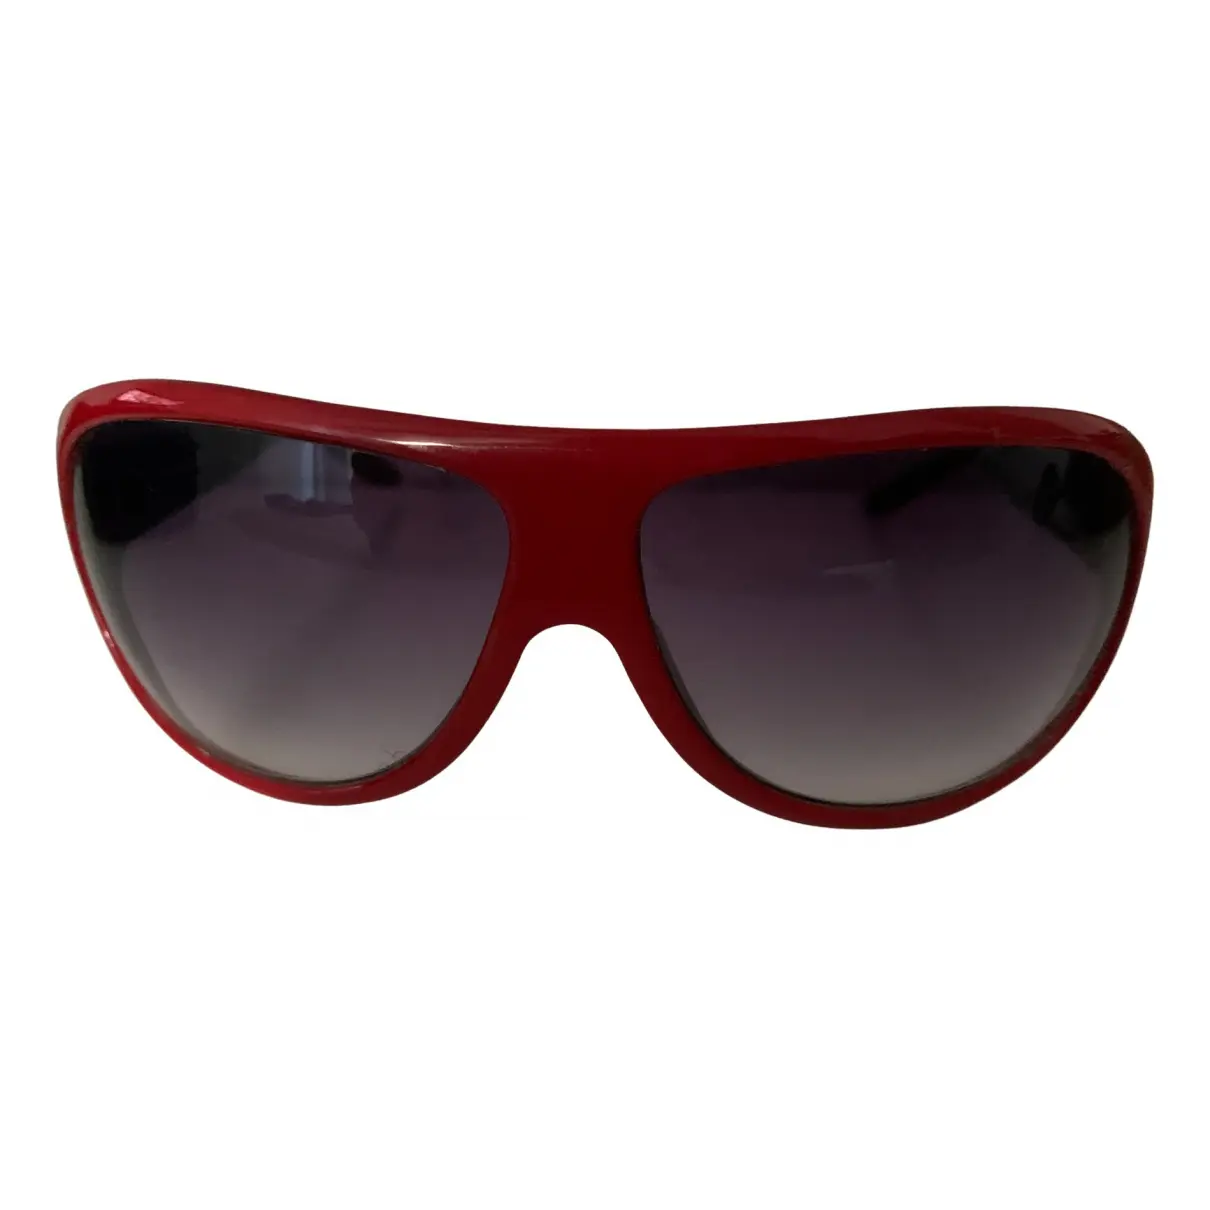 Oversized sunglasses Missoni - Vintage